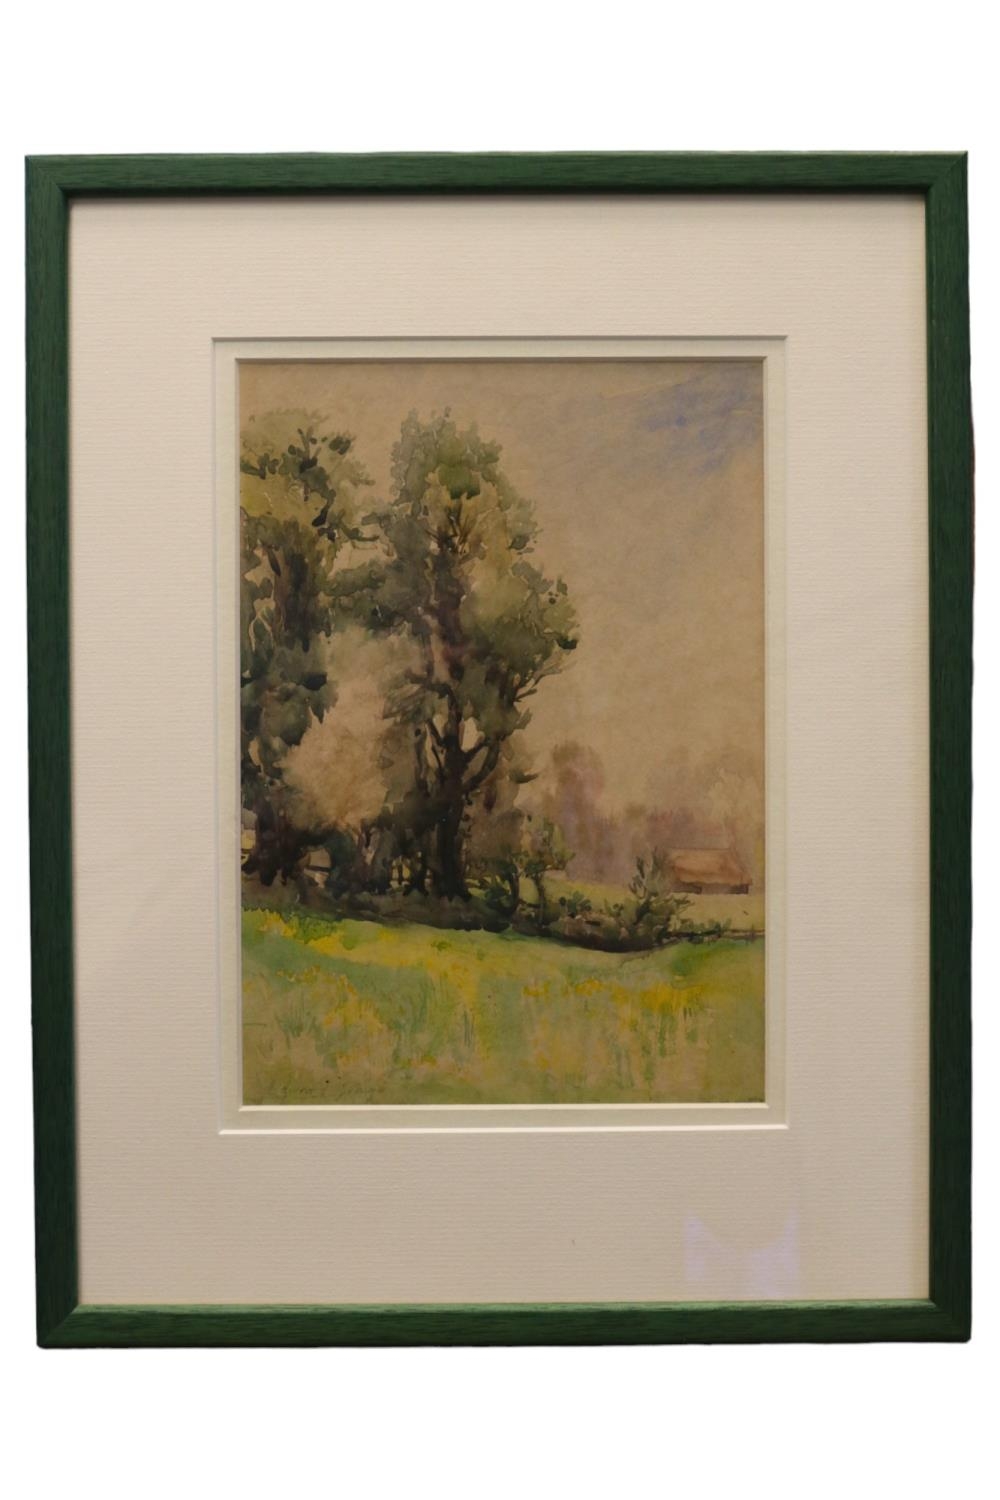 Edward Brian Seago (English, 1910-1974), RBA, ARWS, RWS. Post Impressionist watercolour of a idyllic